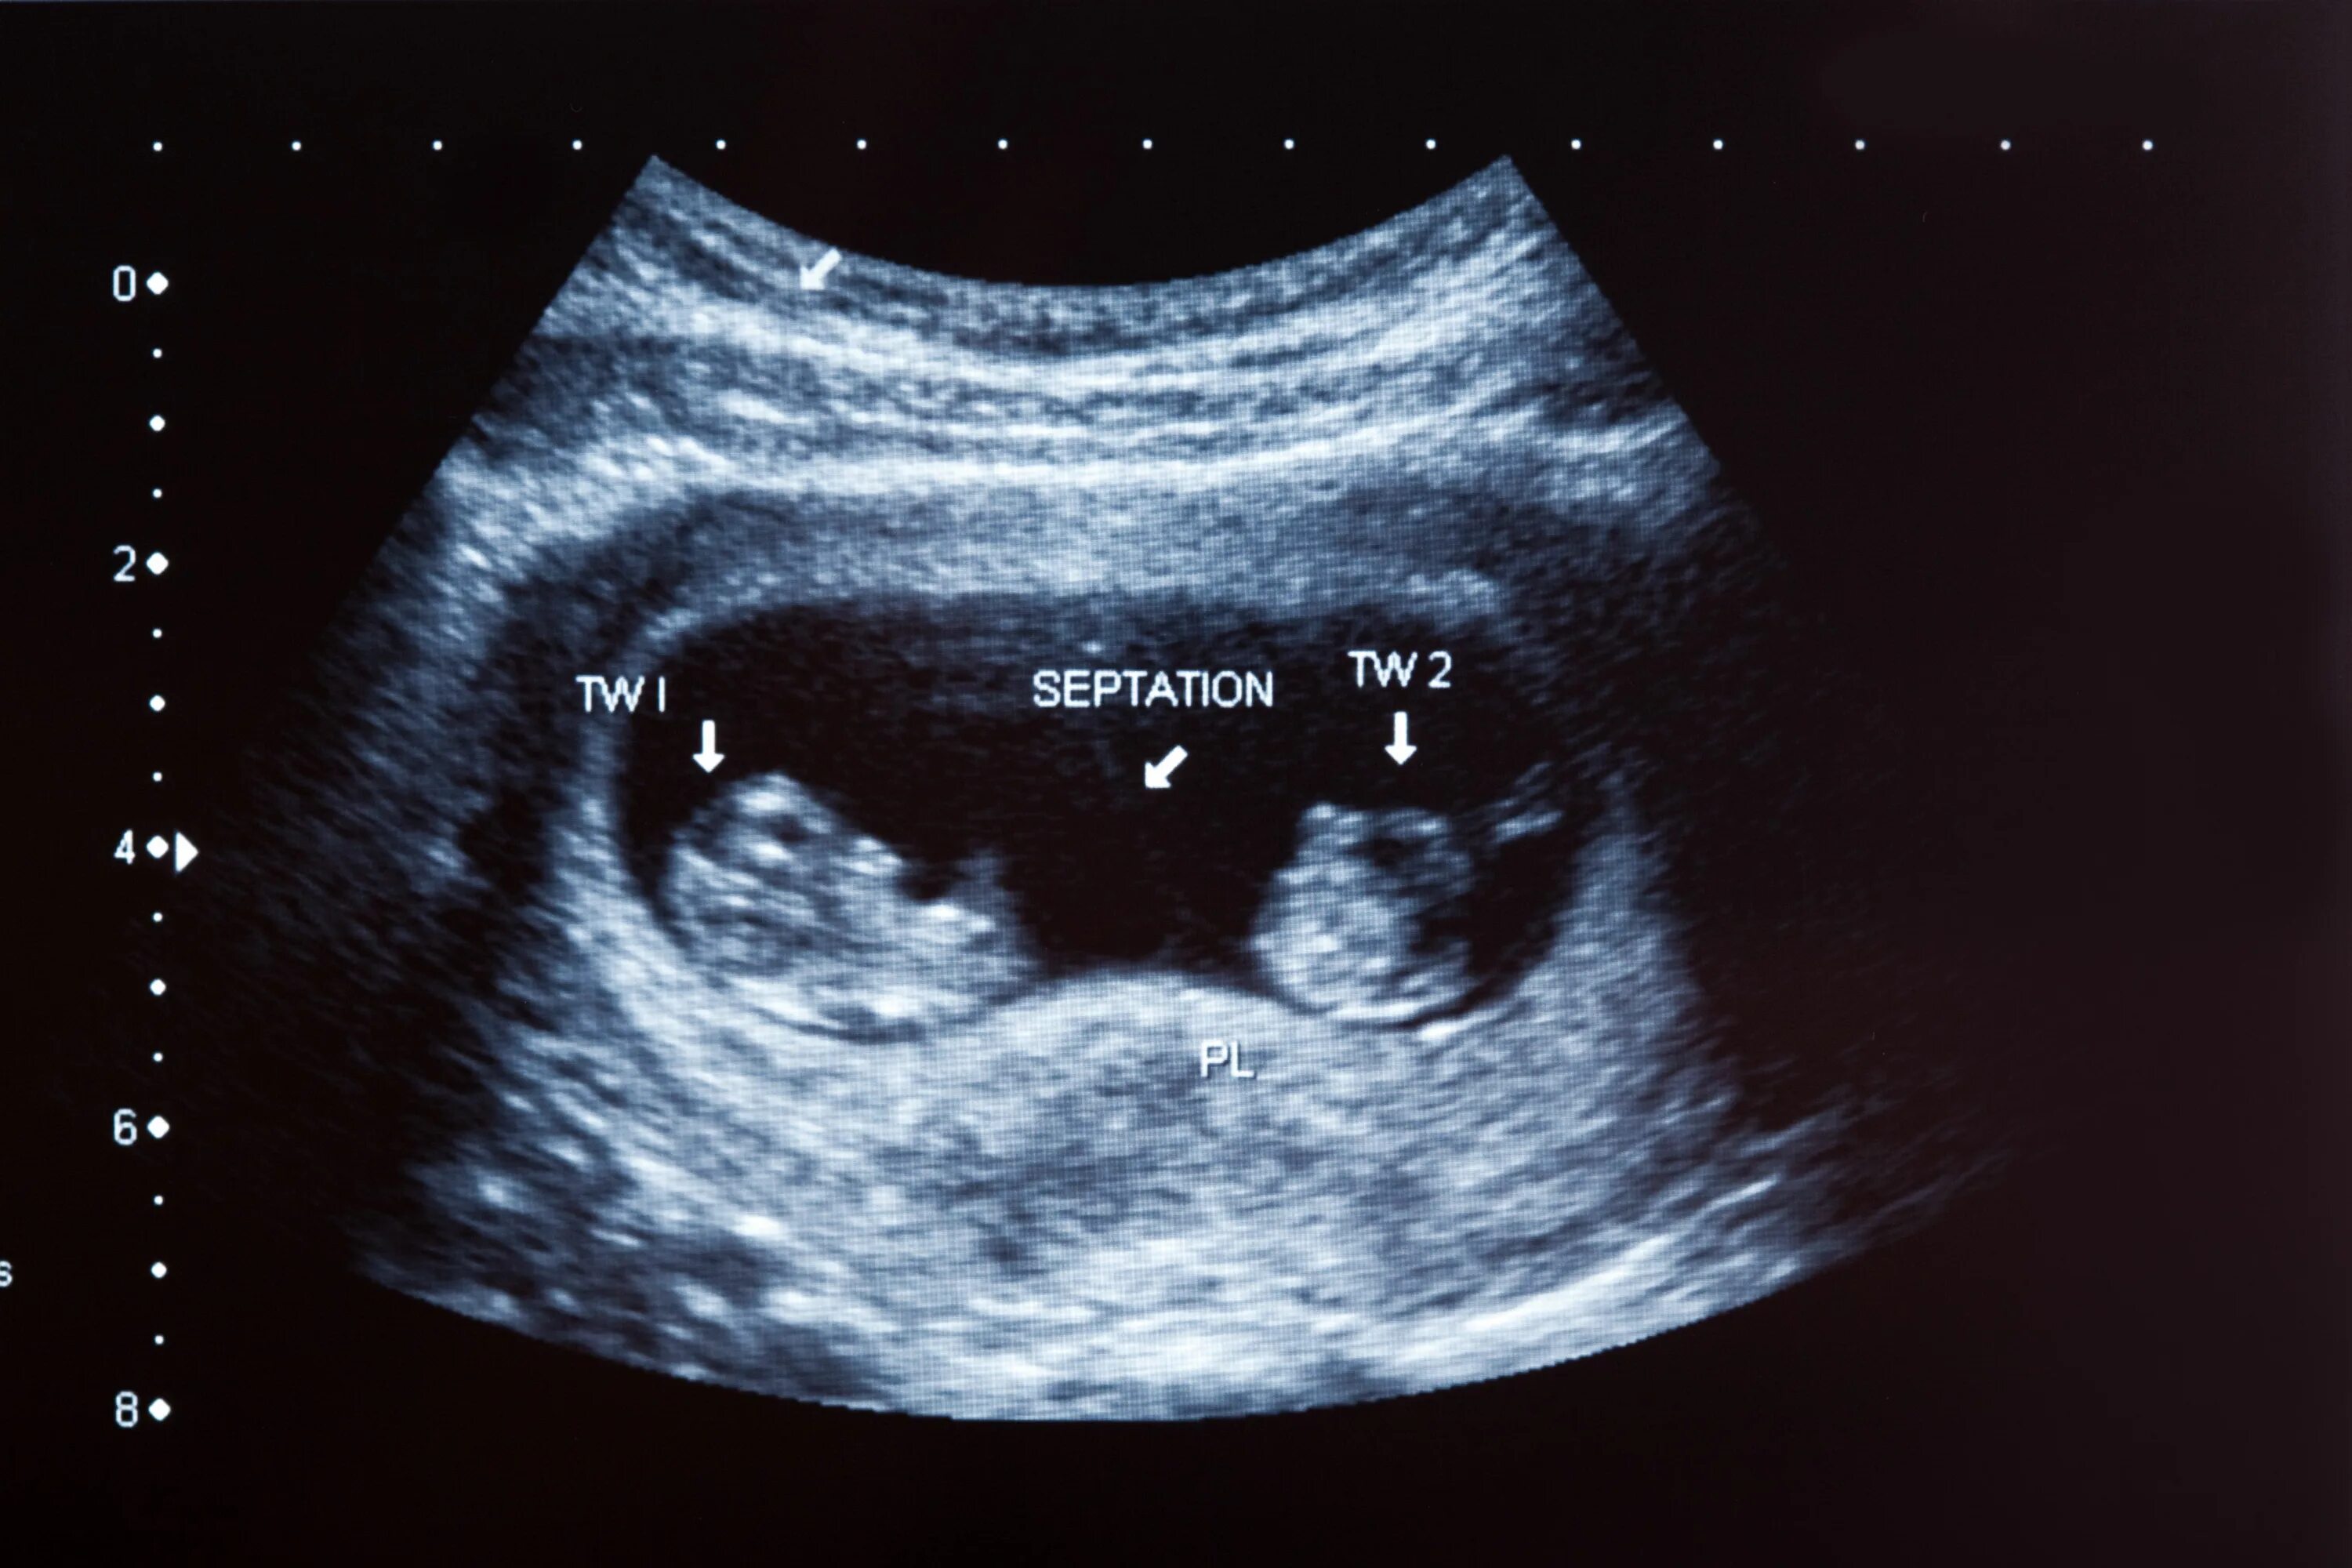 УЗИ 12 недель беременности двойня. УЗИ 10 недель беременности двойня. УЗИ 8 недель беременности двойня. УЗИ 20 недель беременности многоплодная беременность. 2 недели видно на узи